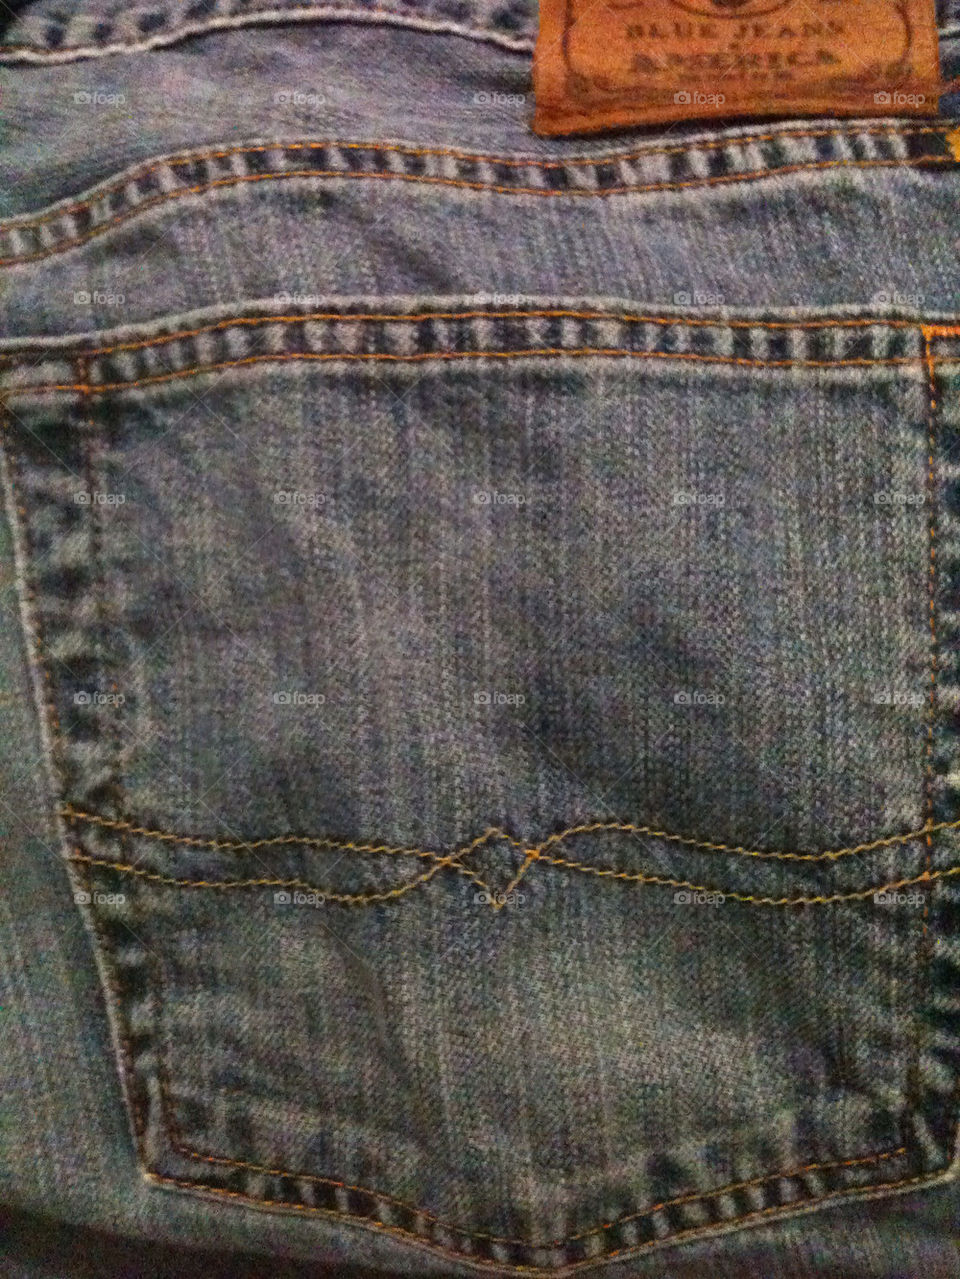 Men's blue jean pocket